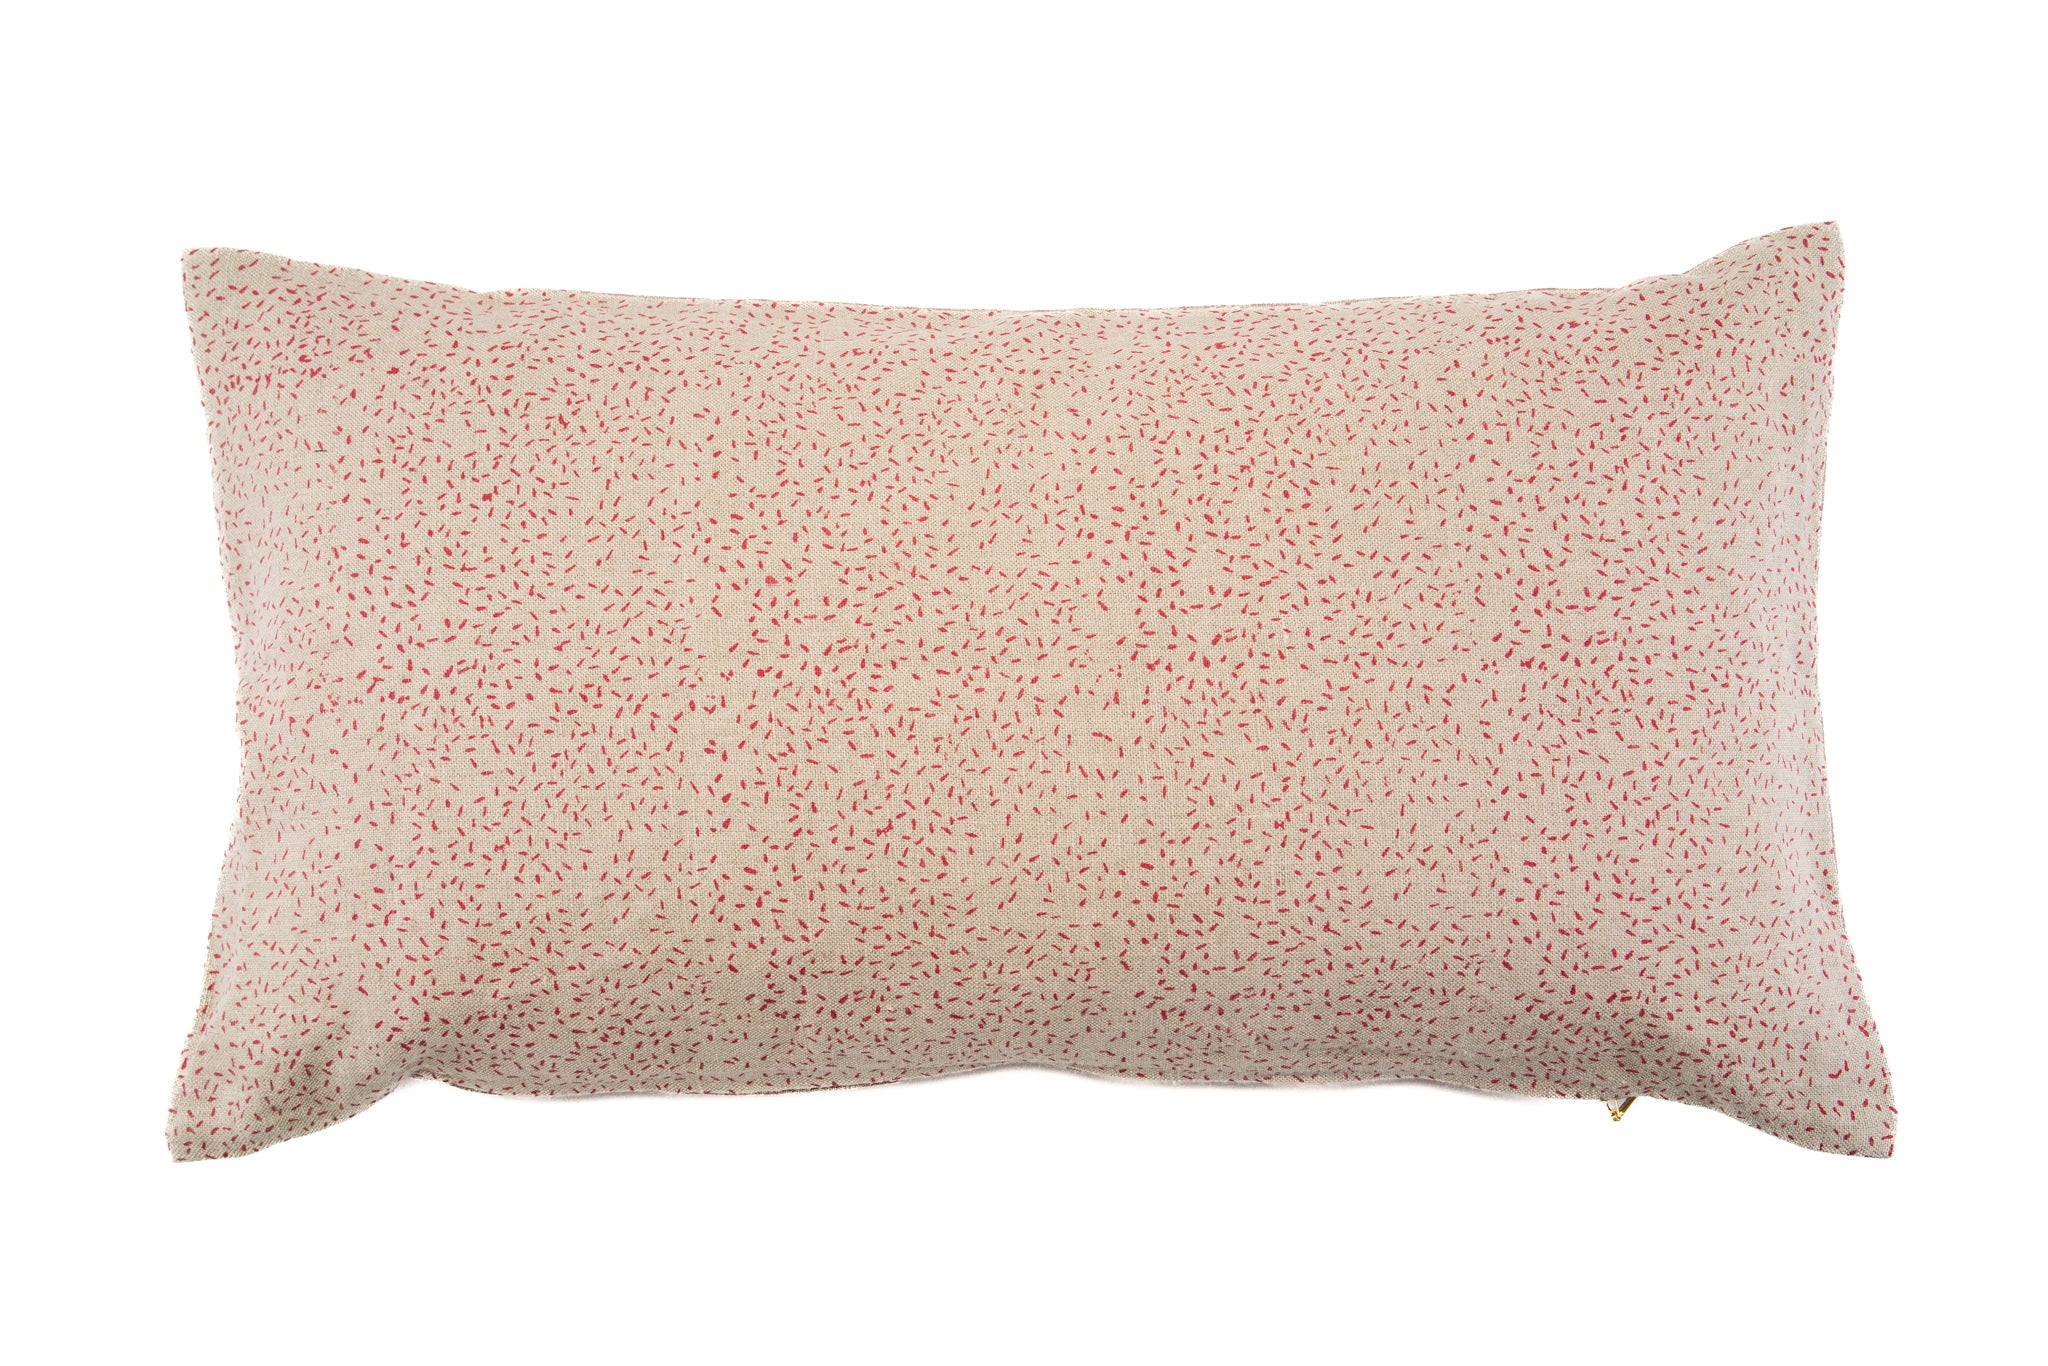 Pillow: Hand printed linen - P426